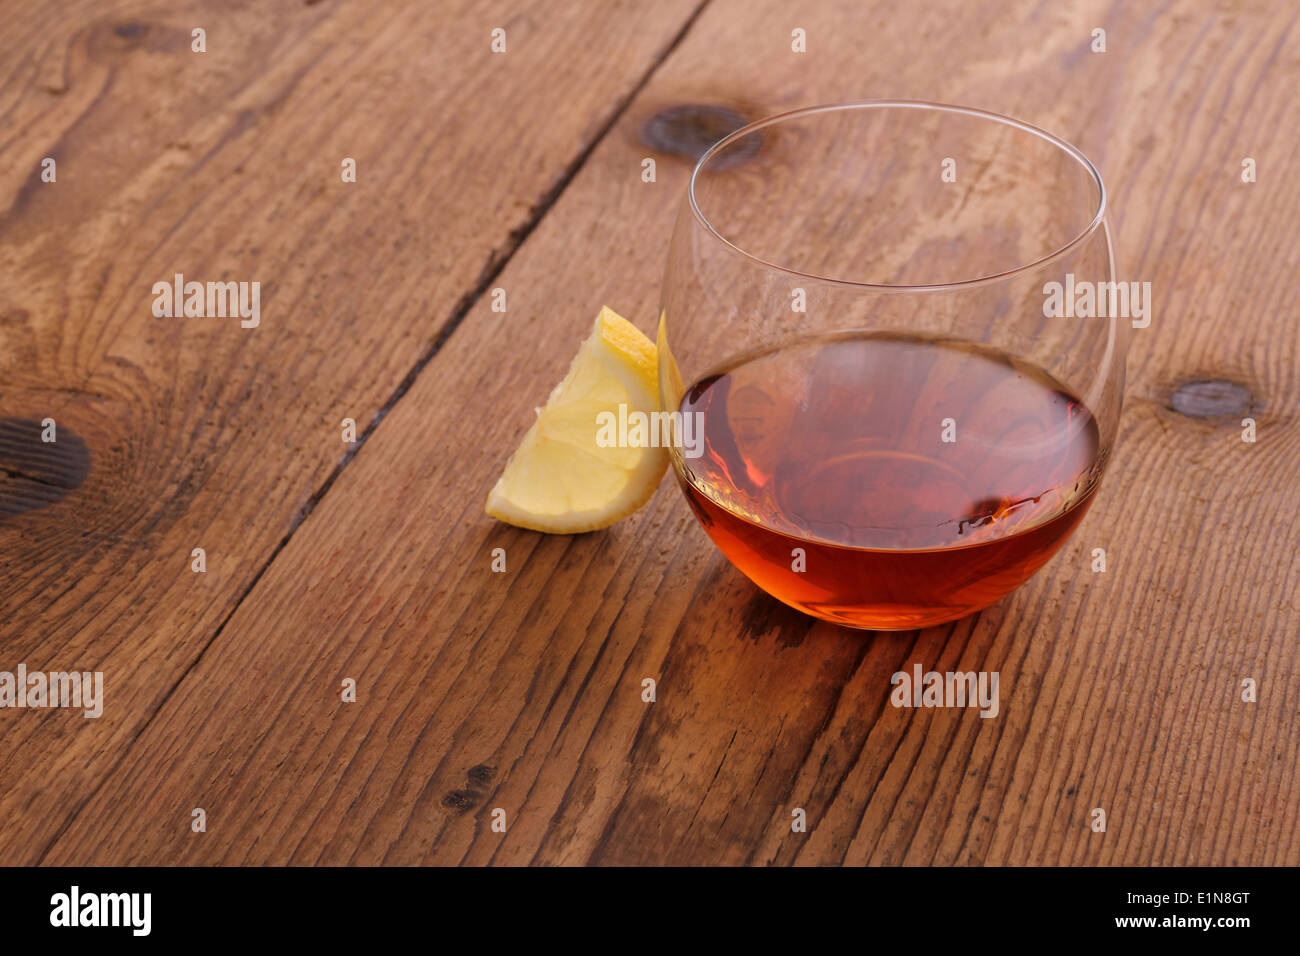 Cognac de luxe en verre décoratif sur bois avec du citron Banque D'Images